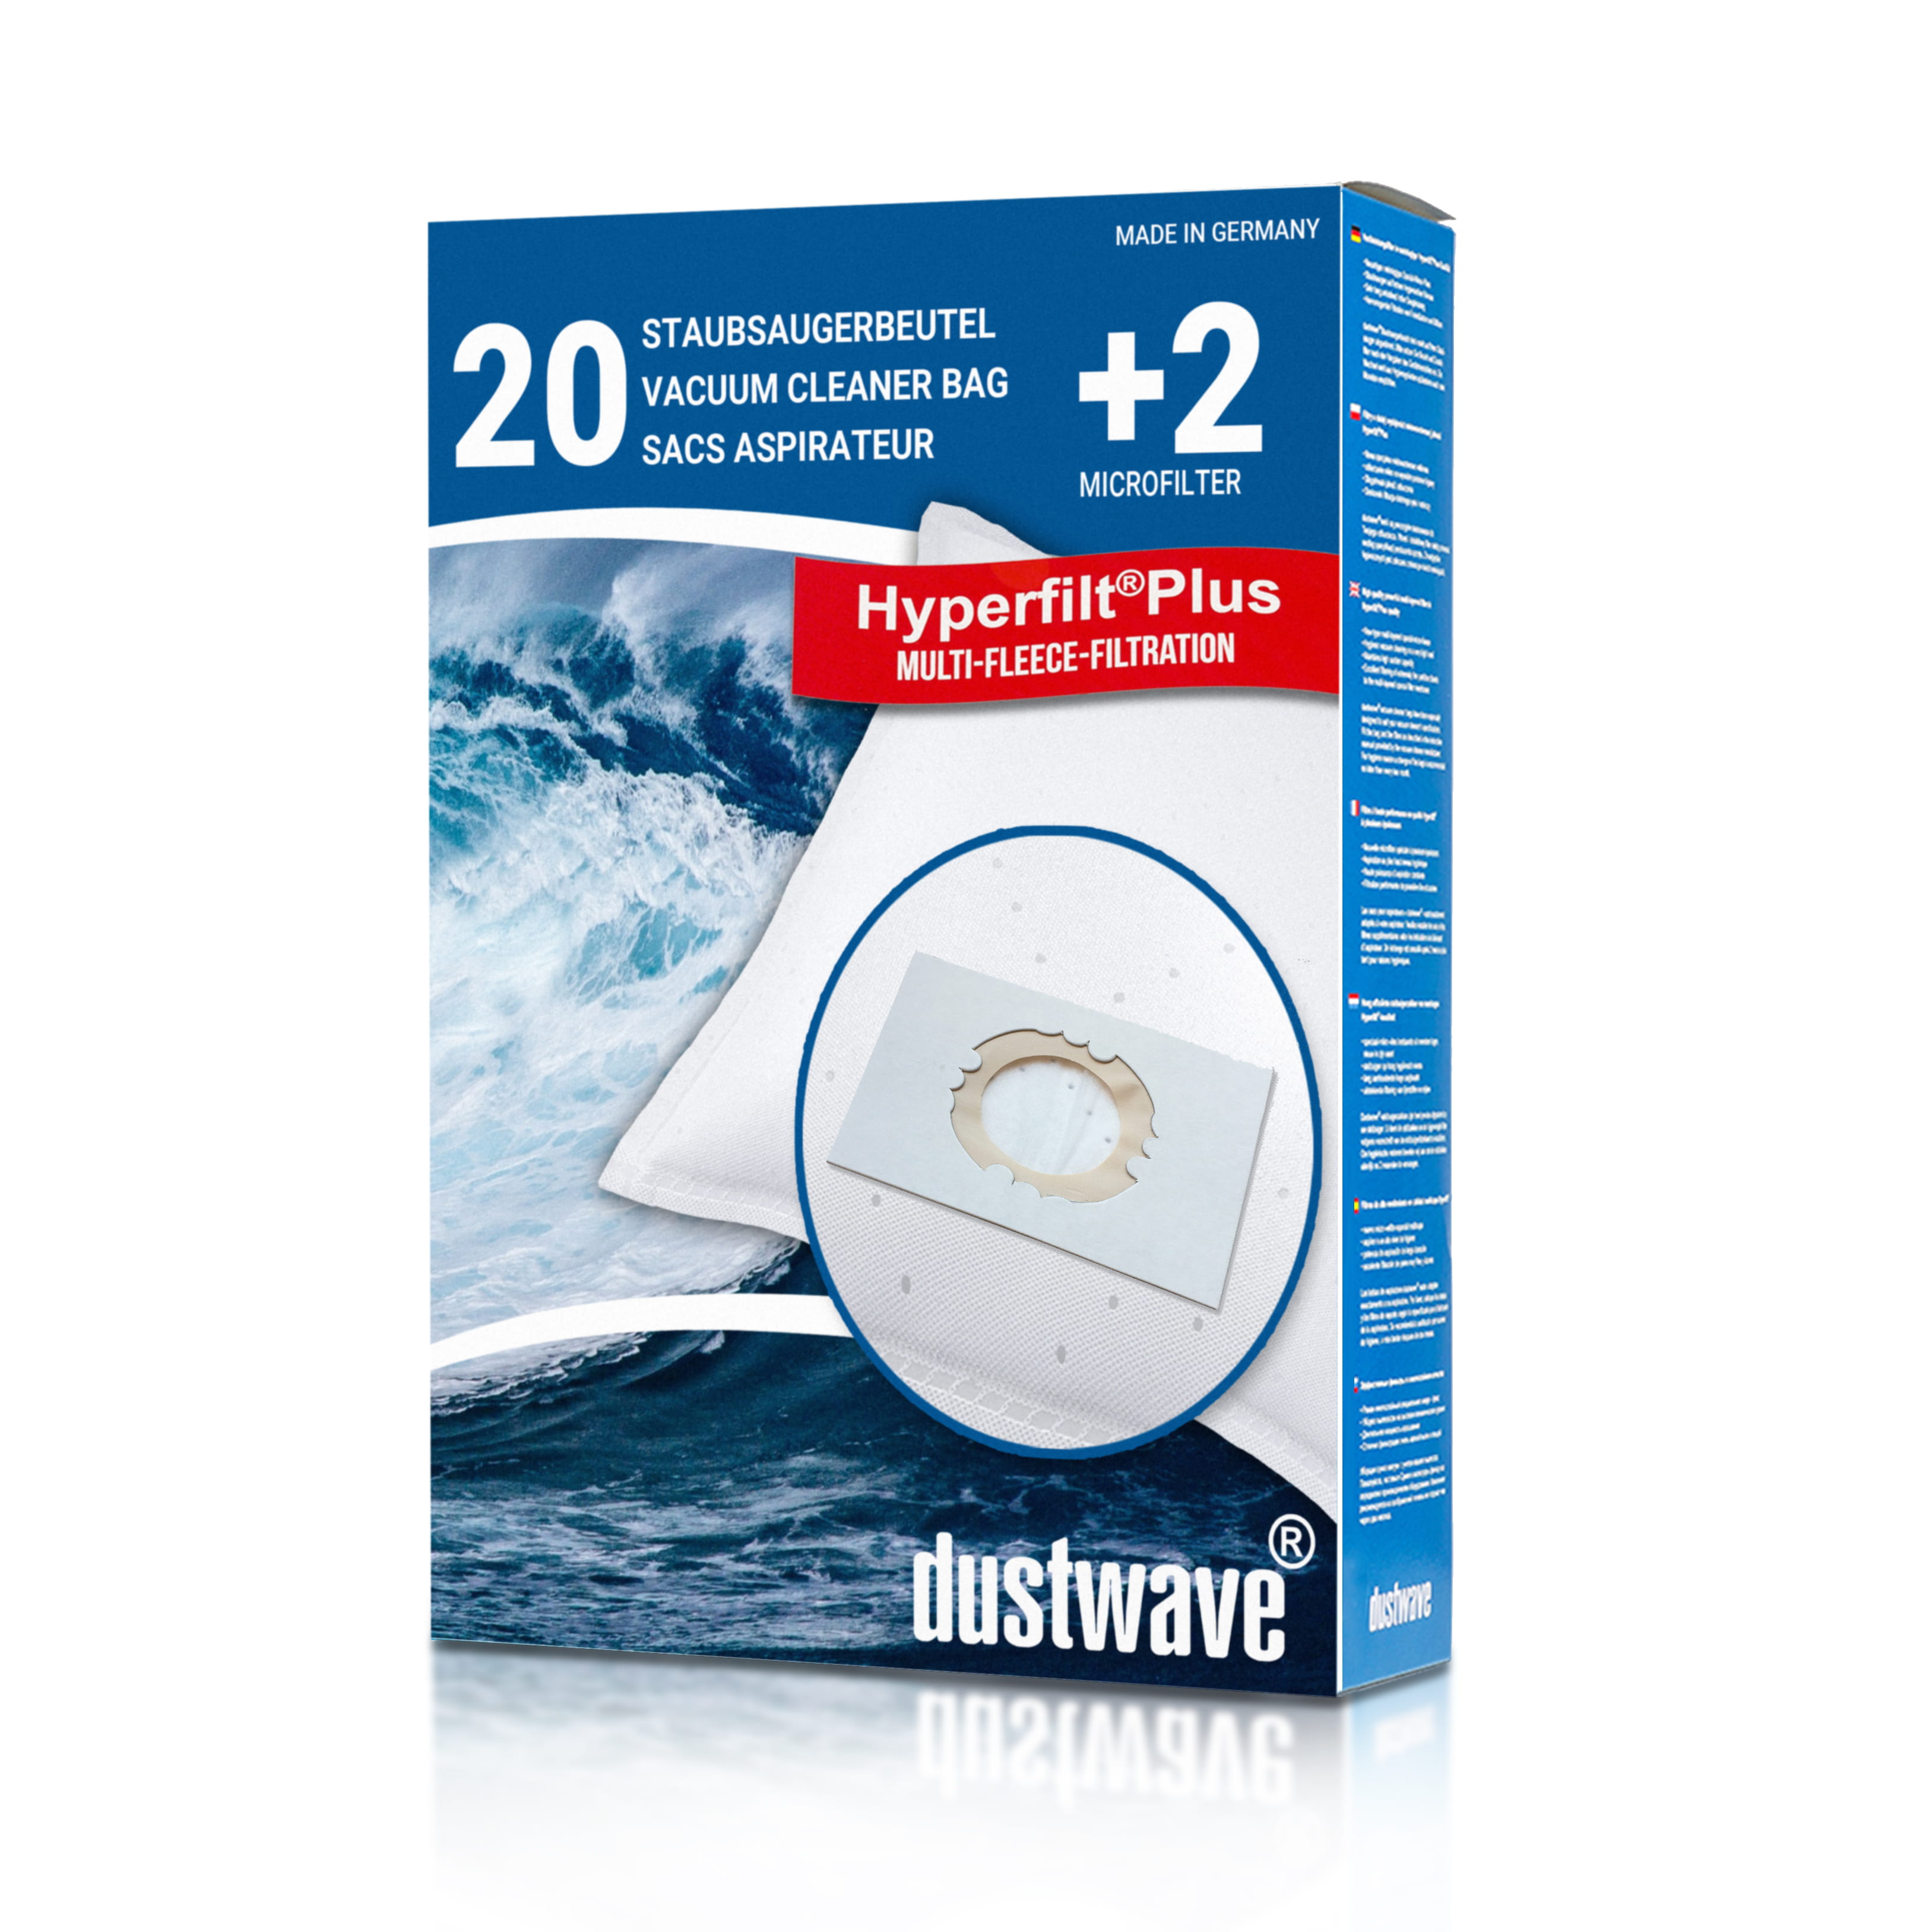 Dustwave® 20 Staubsaugerbeutel für Hoover BD SX2056 011 - hocheffizient, mehrlagiges Mikrovlies mit Hygieneverschluss - Made in Germany